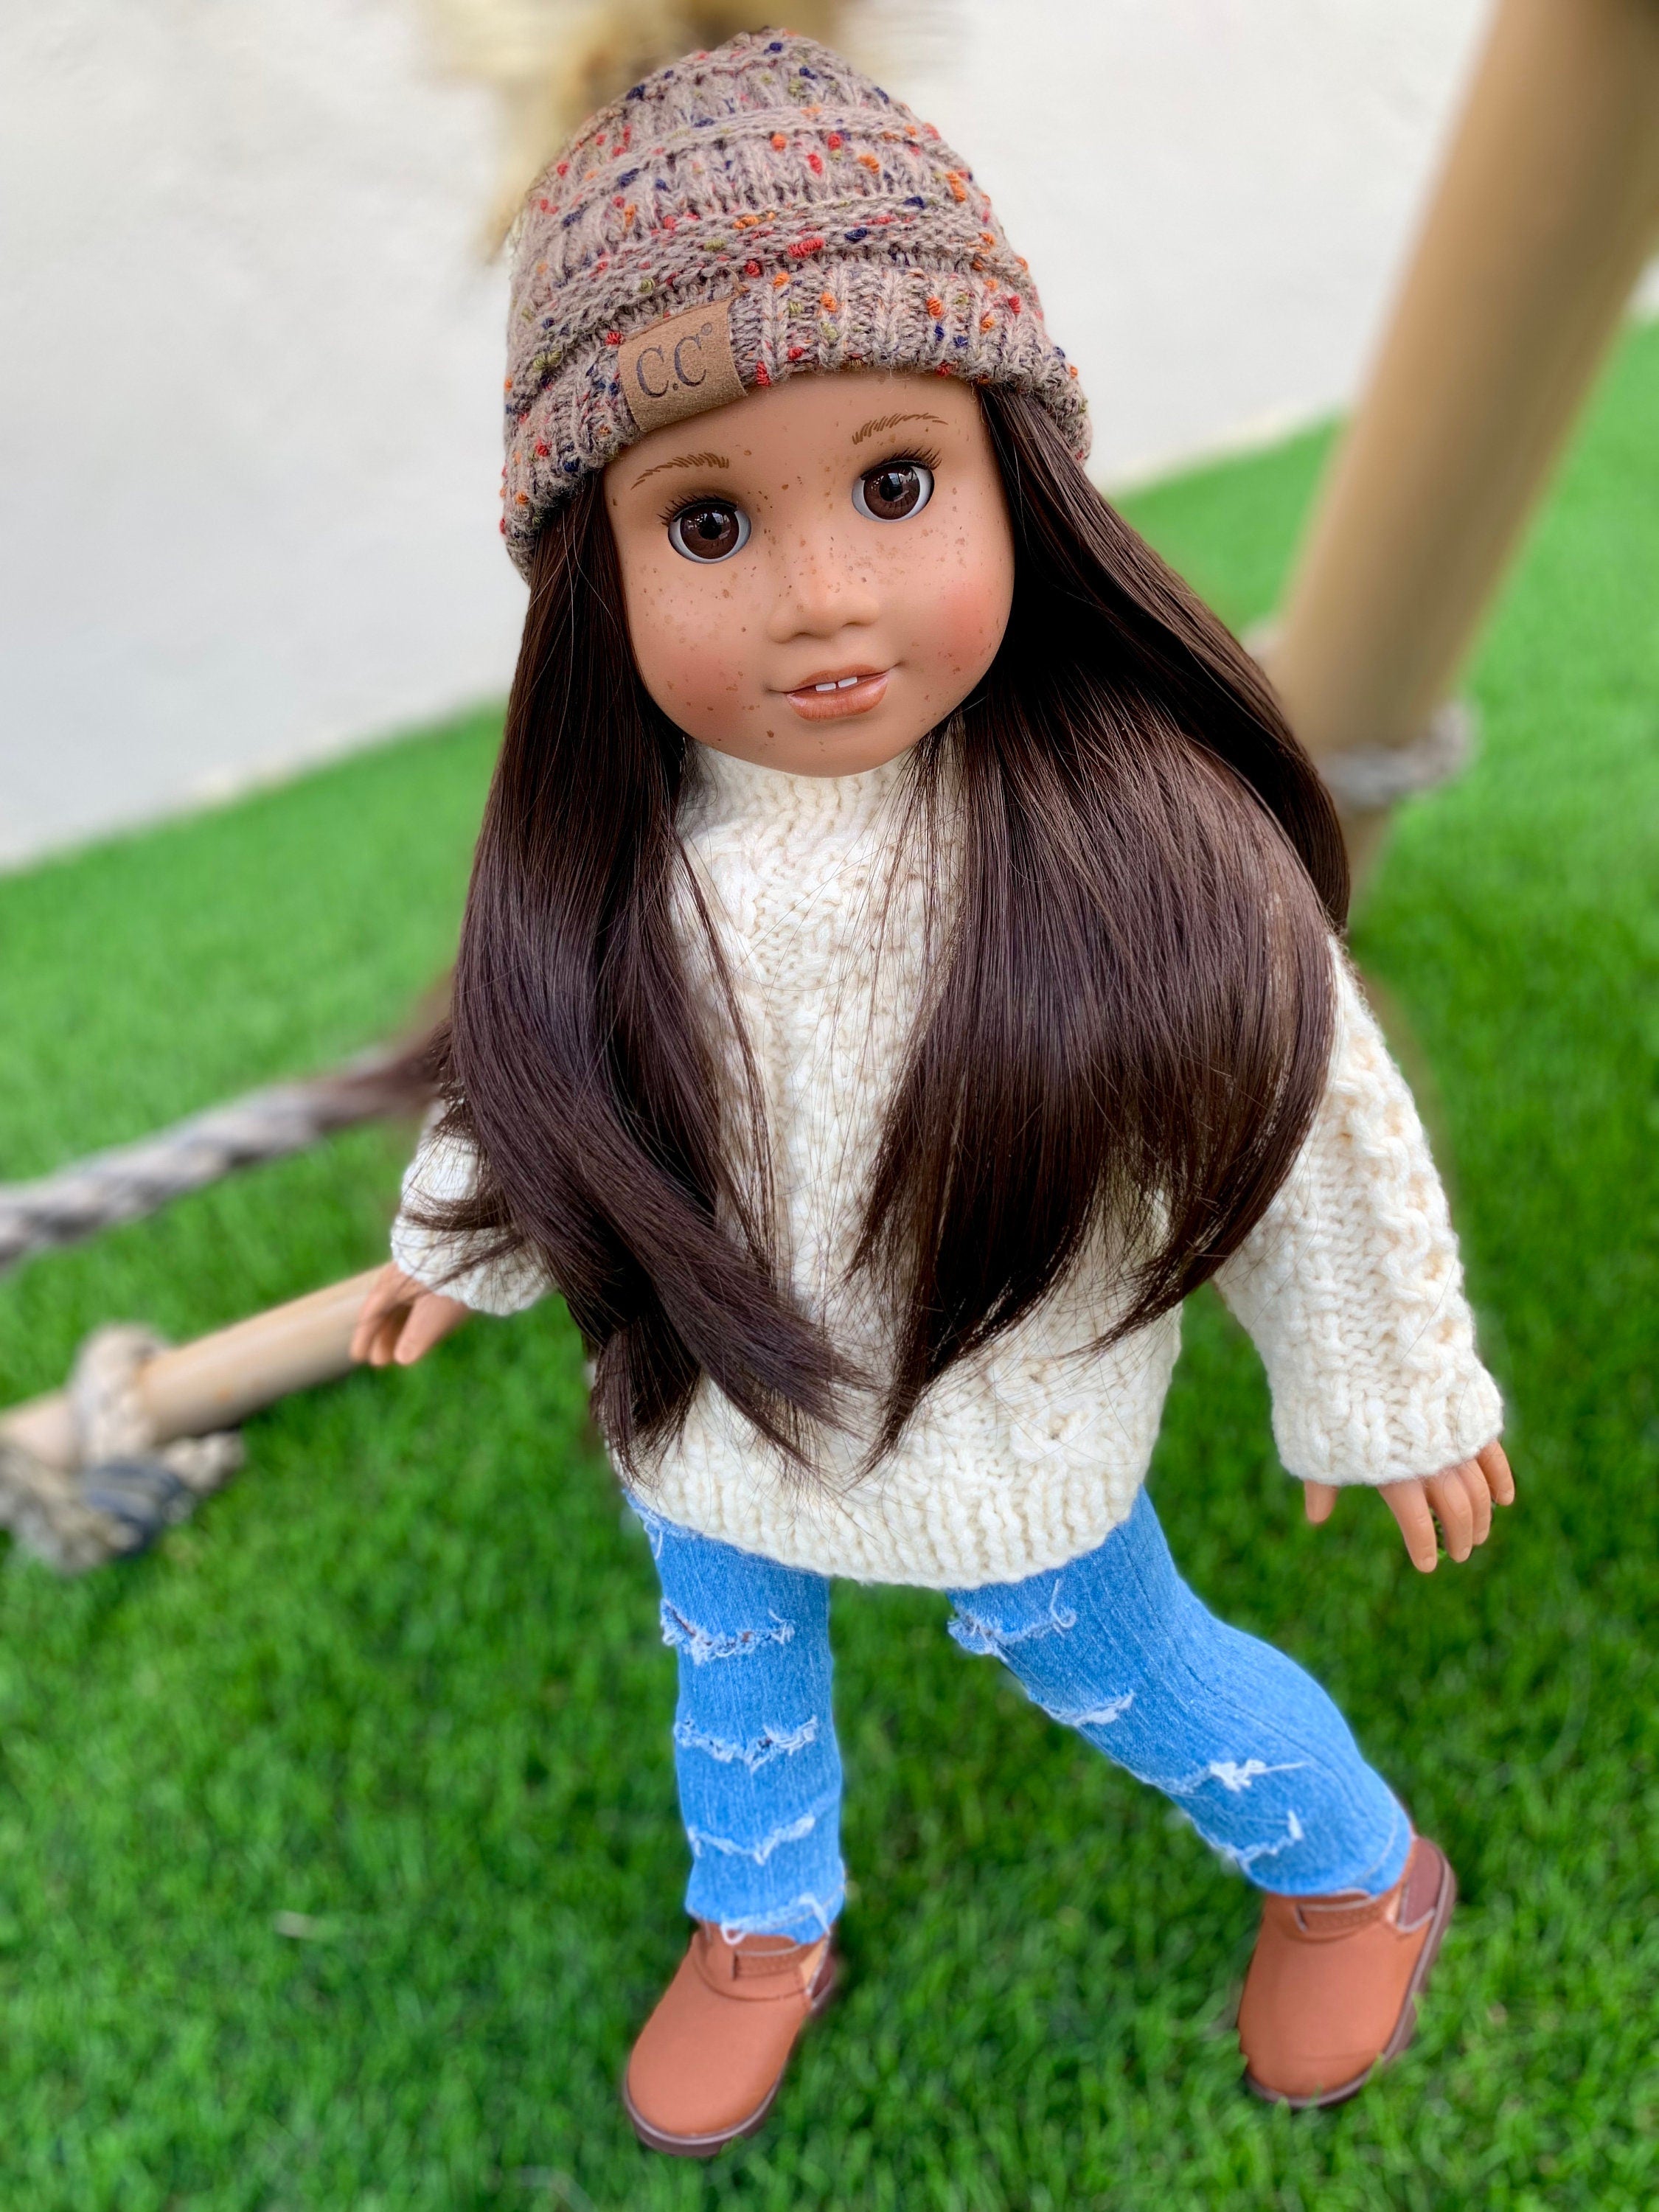 Custom doll wig for 18" American Girl Dolls - Heat Safe - Tangle Resistant - fits 10-11" head size of 18" dolls OG Blythe BJD Gotz